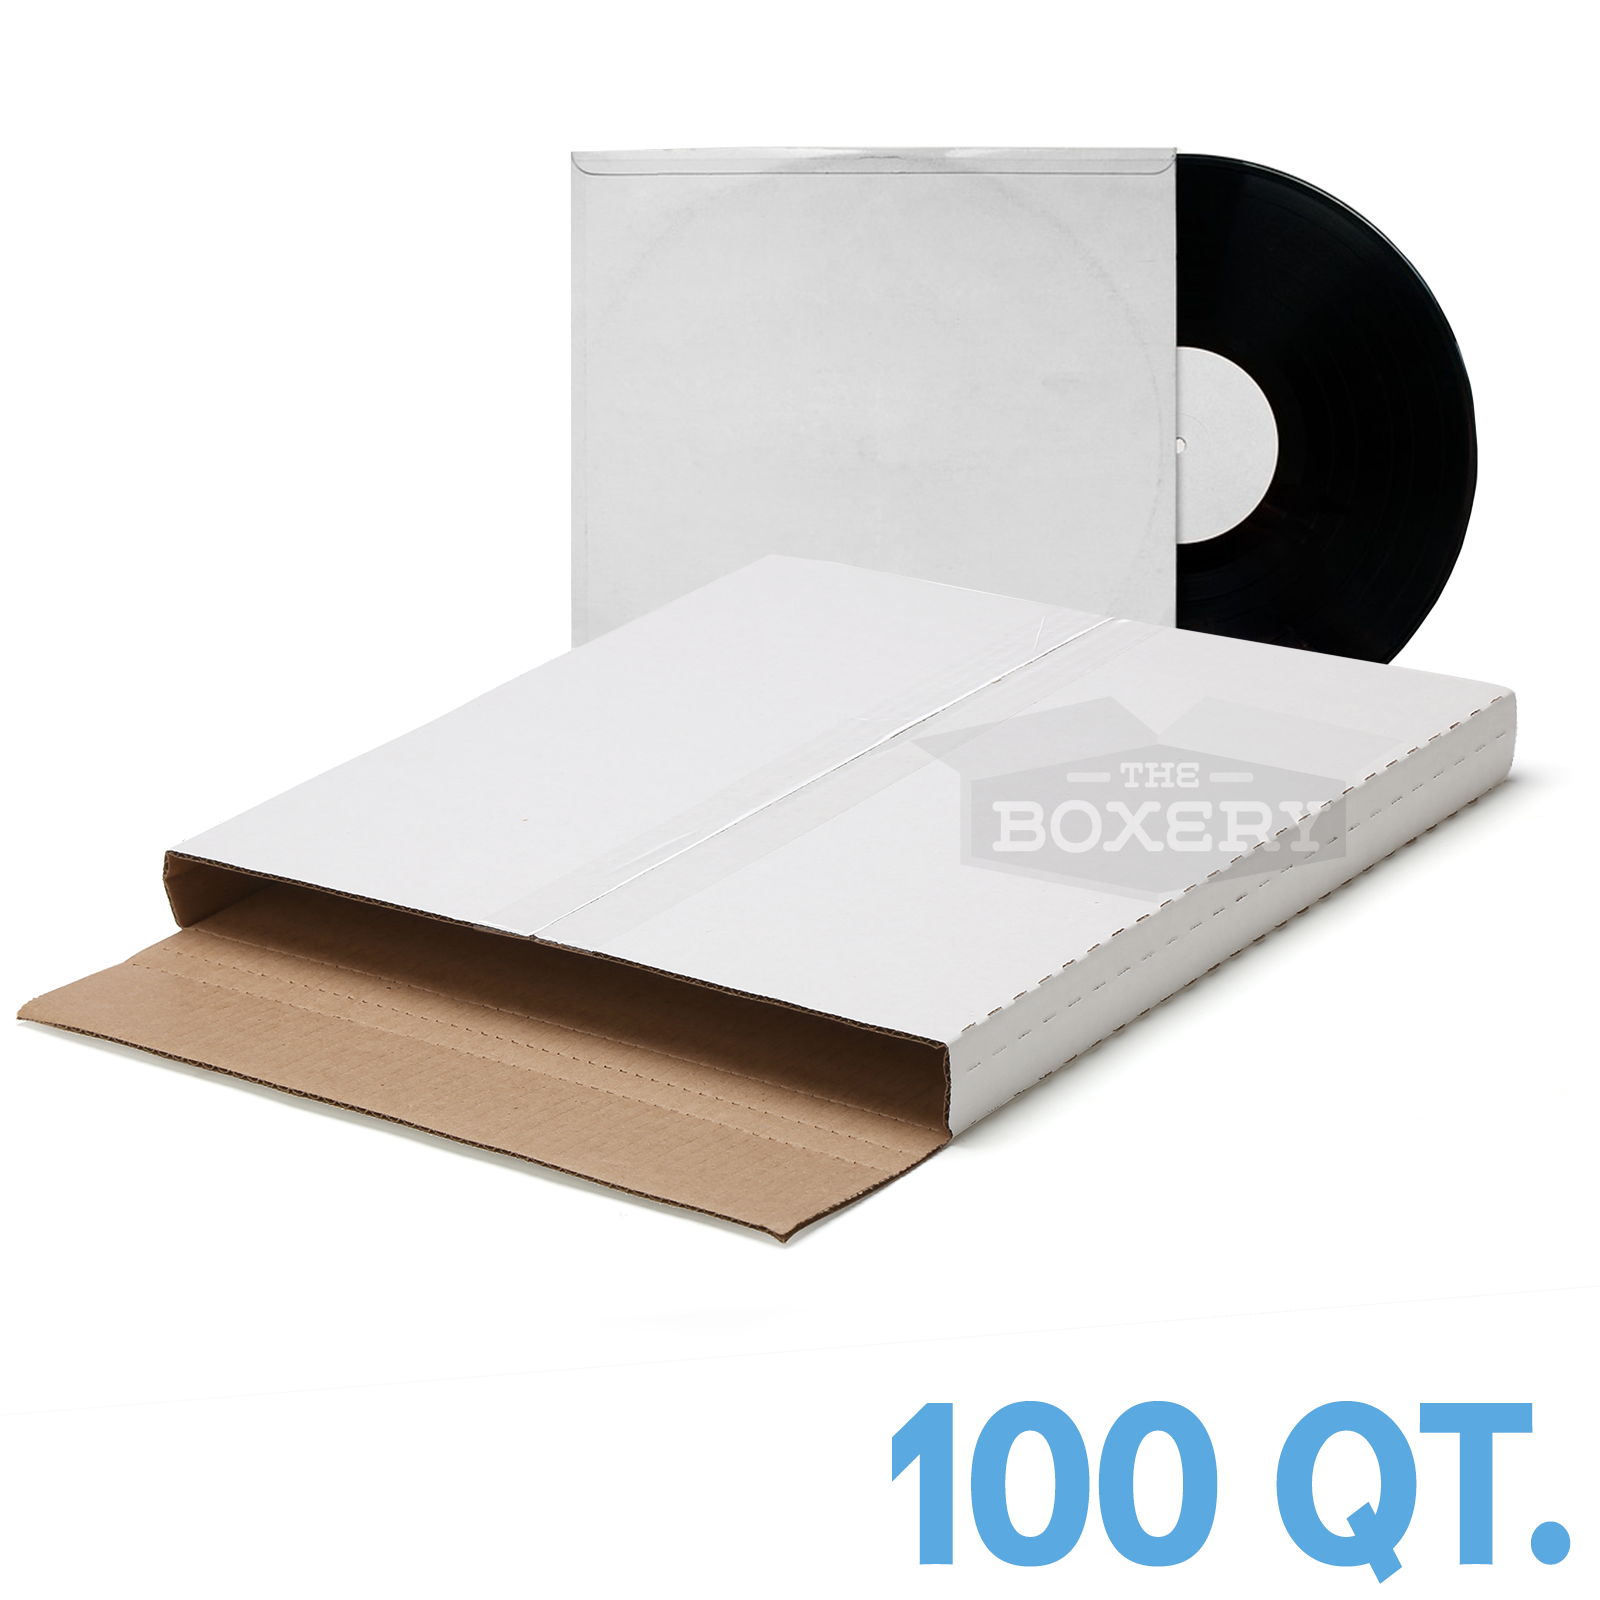 100 ~ ( Premium ) Lp Vinyl Record Album Book Or Box Mailers